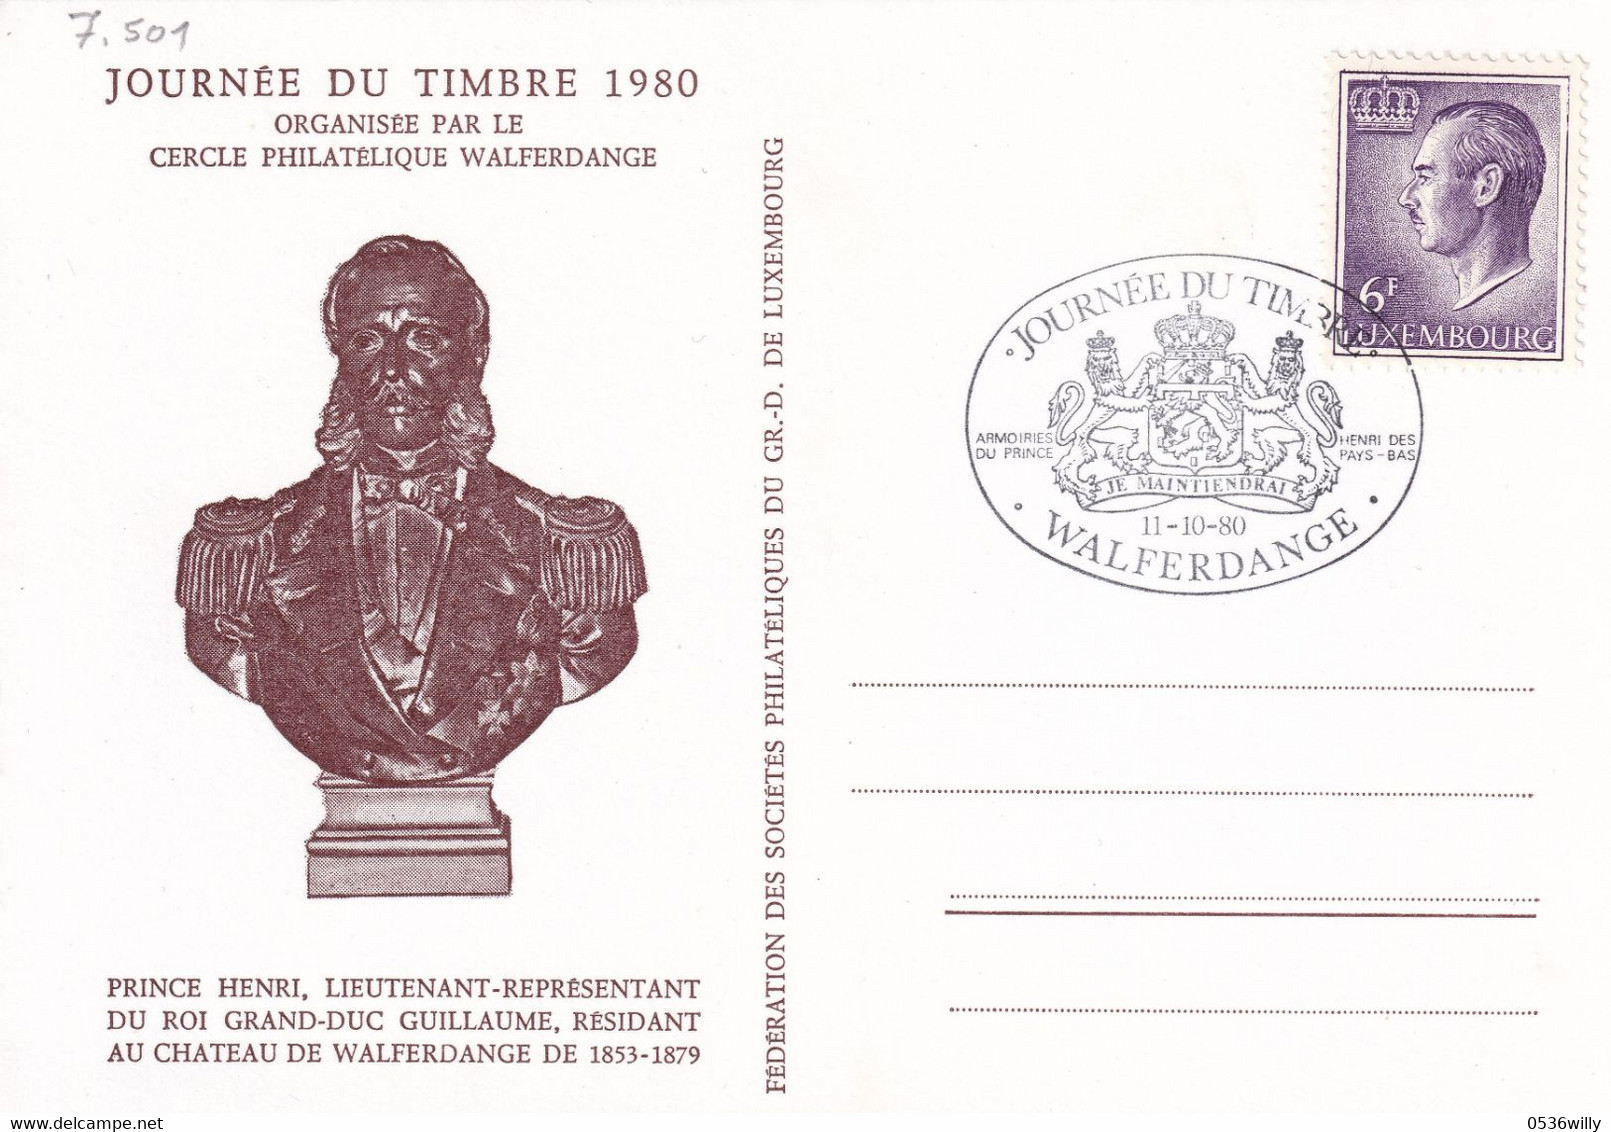 Walferdange Journée Du Timbre (7.501) - Covers & Documents